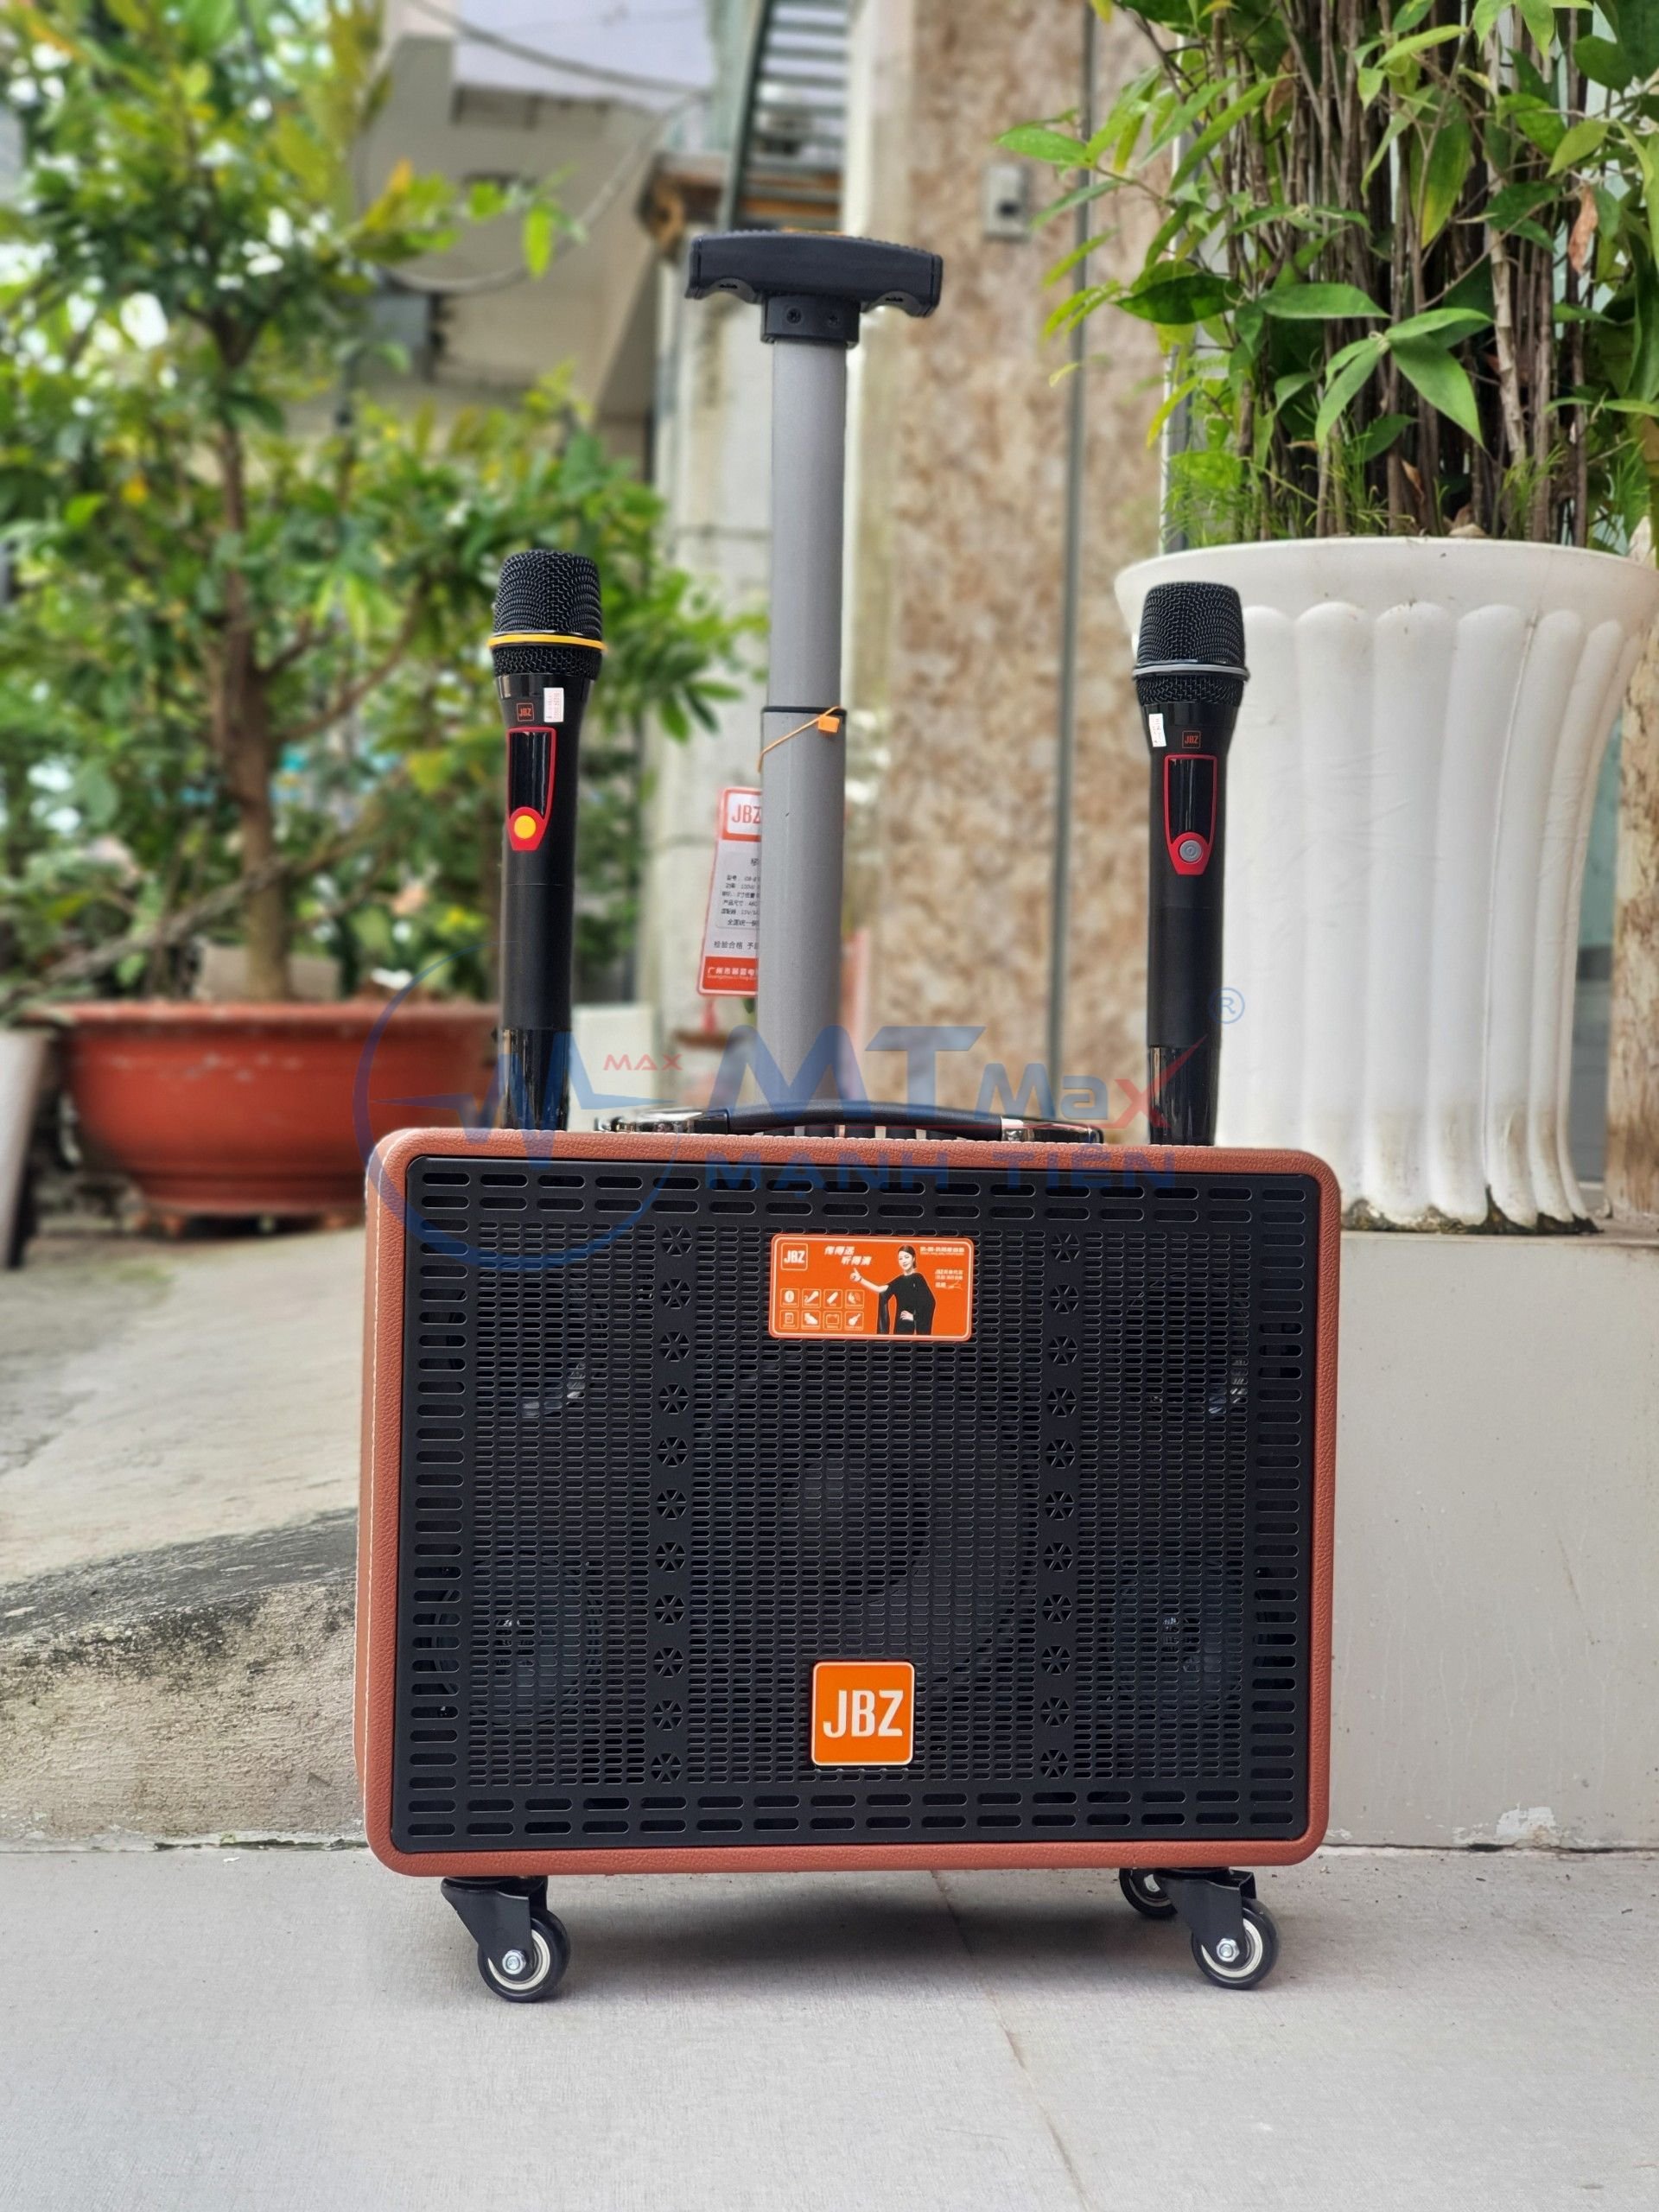 [Hàng mới về] Loa di động xách tay karaoke JBZ J08-8 được tích hợp bộ chỉnh âm thanh có thể dùng cho việc hát karaoke với đầy đủ các cổng kết nối đặc biệt là phần tiếng vang echo rất mềm mại hát nhạc bolero dân ca sướt mướt bay bổng